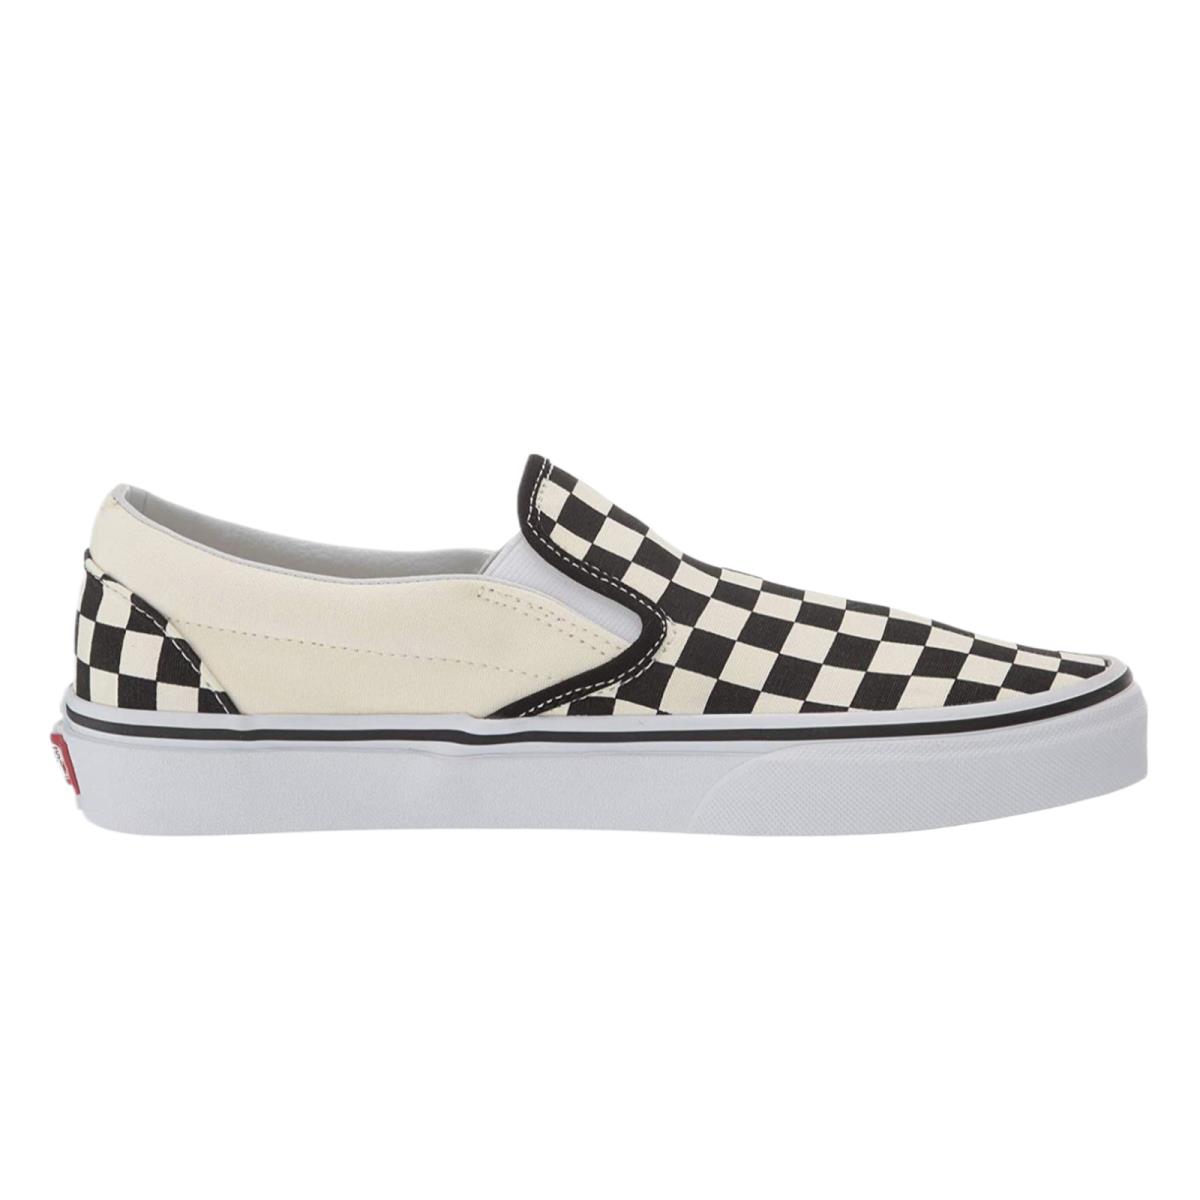 Vans Adult Unisex Checkerboard Slip-on Skate Shoes Black/off White VN000EYEBWW